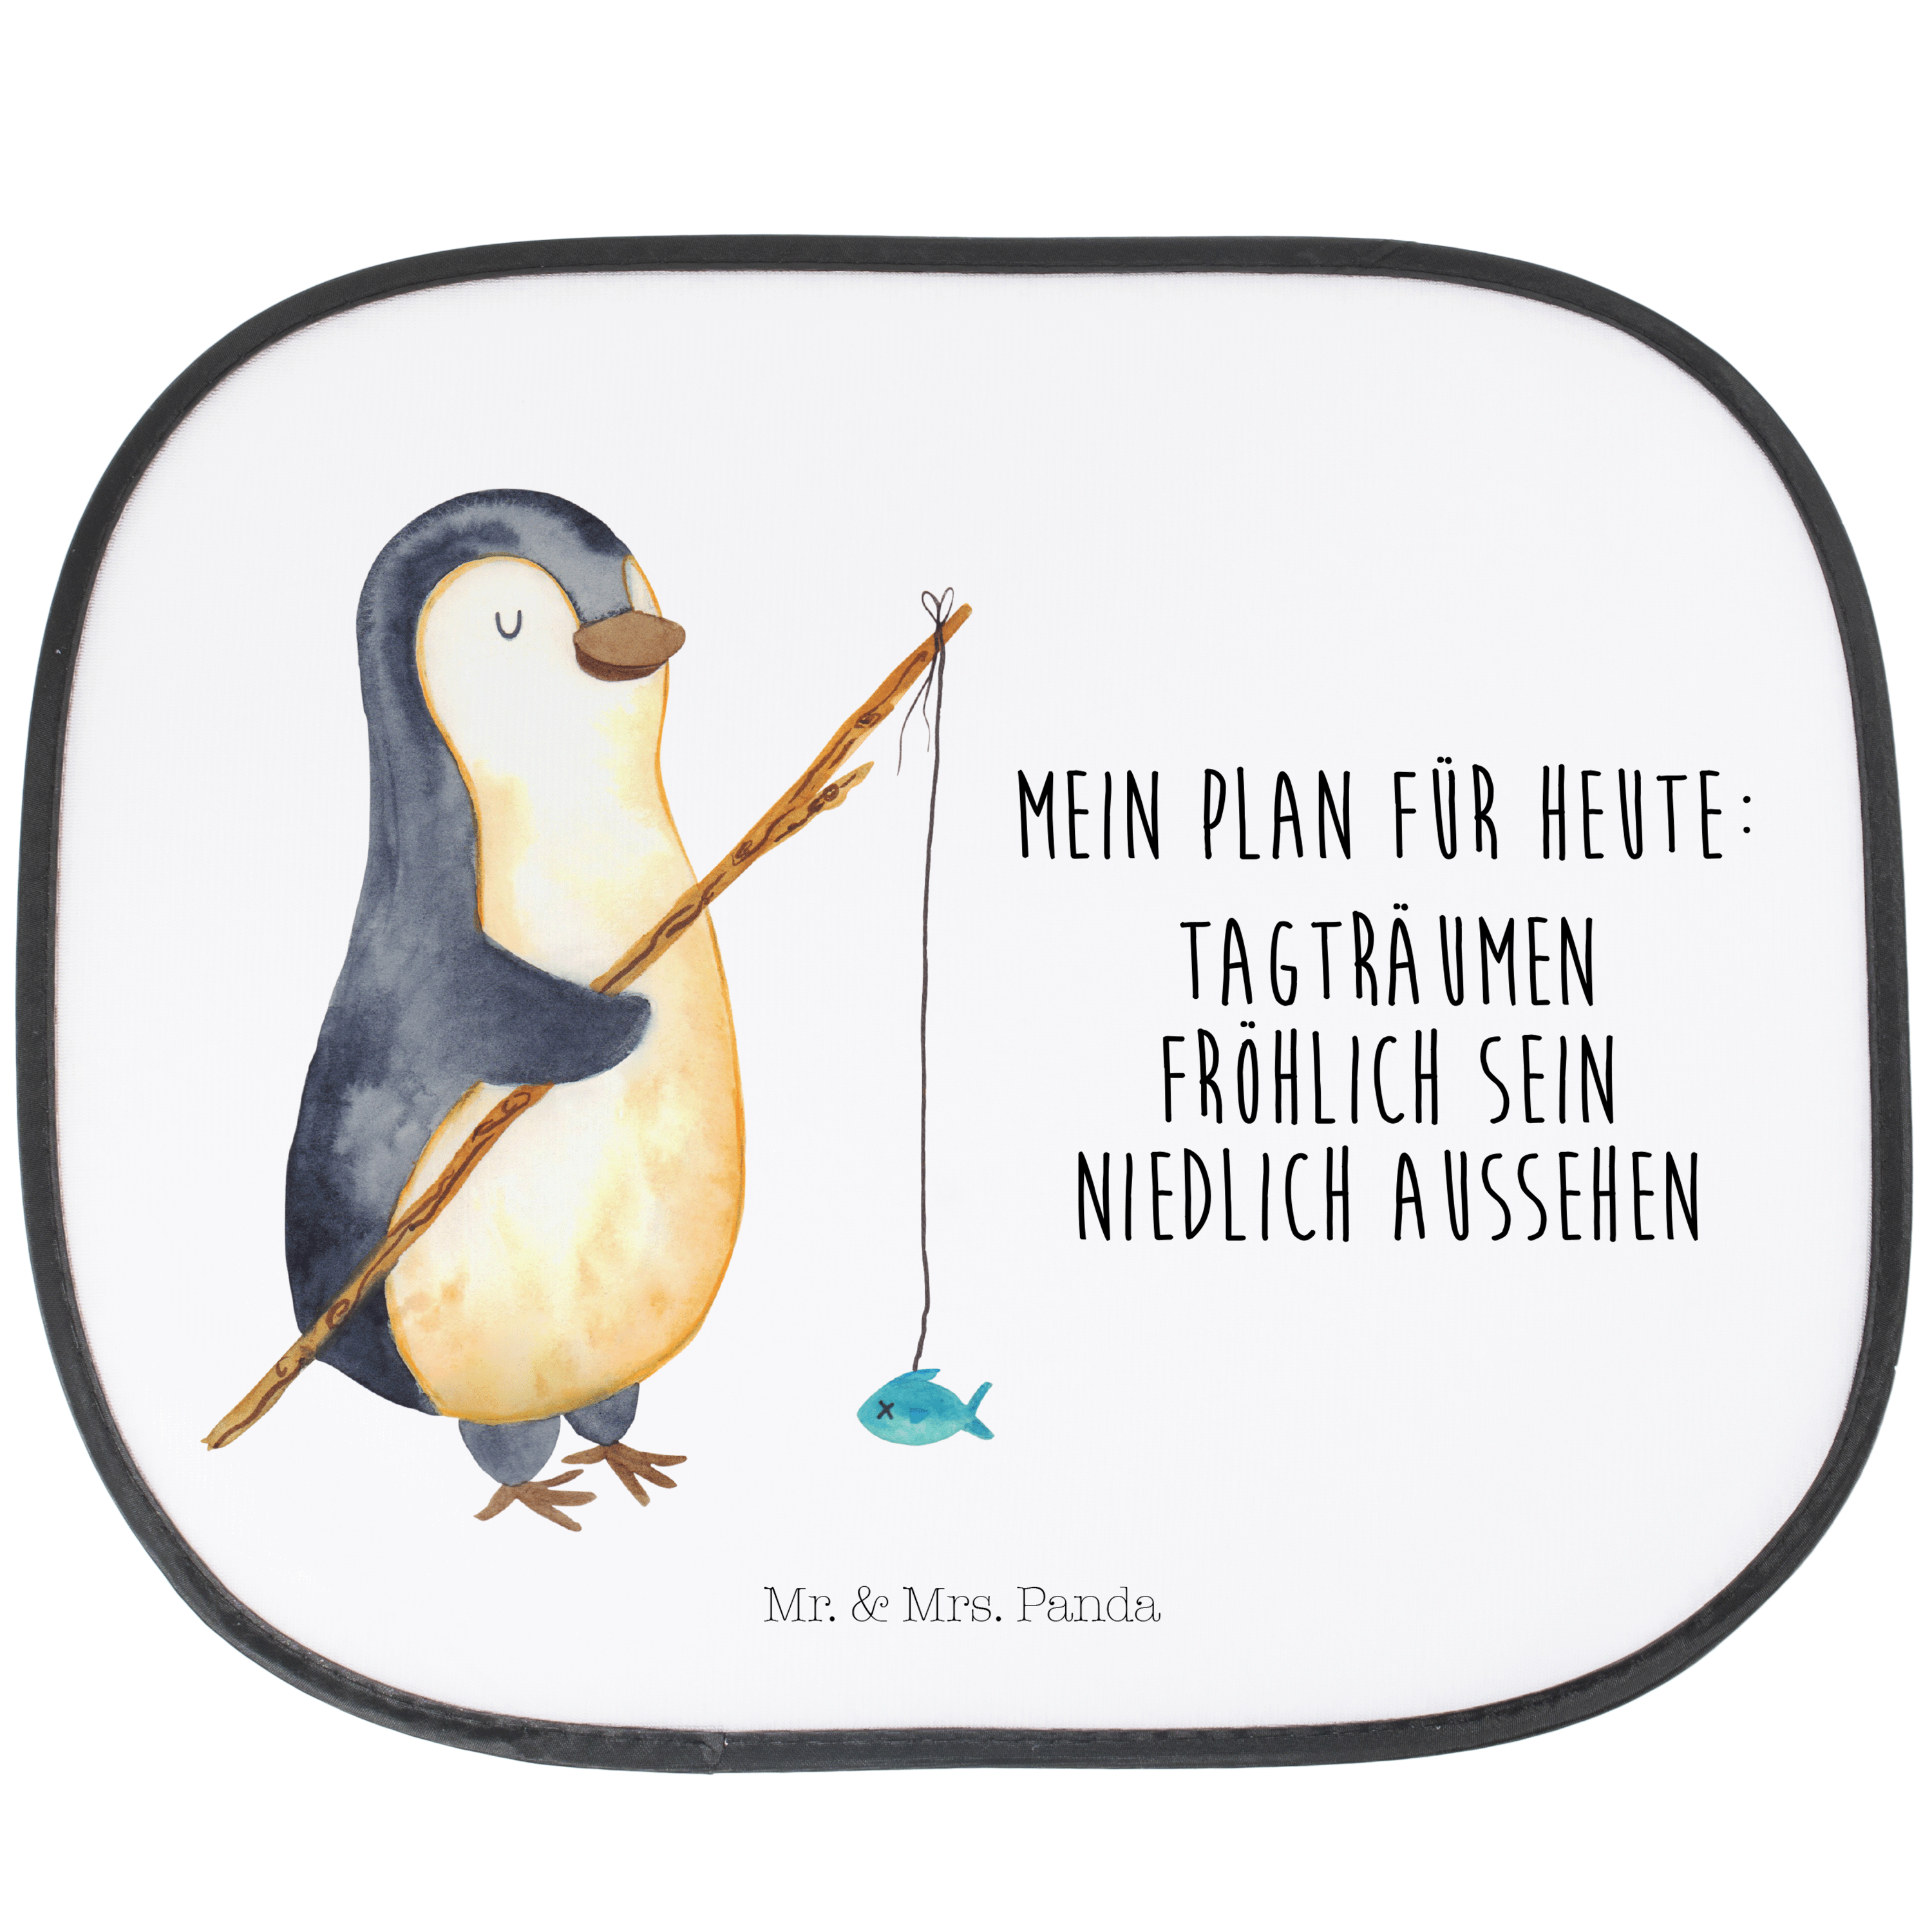 Sonnenschutz Pinguin umarmend - Eisblau - Geschenk, Liebe